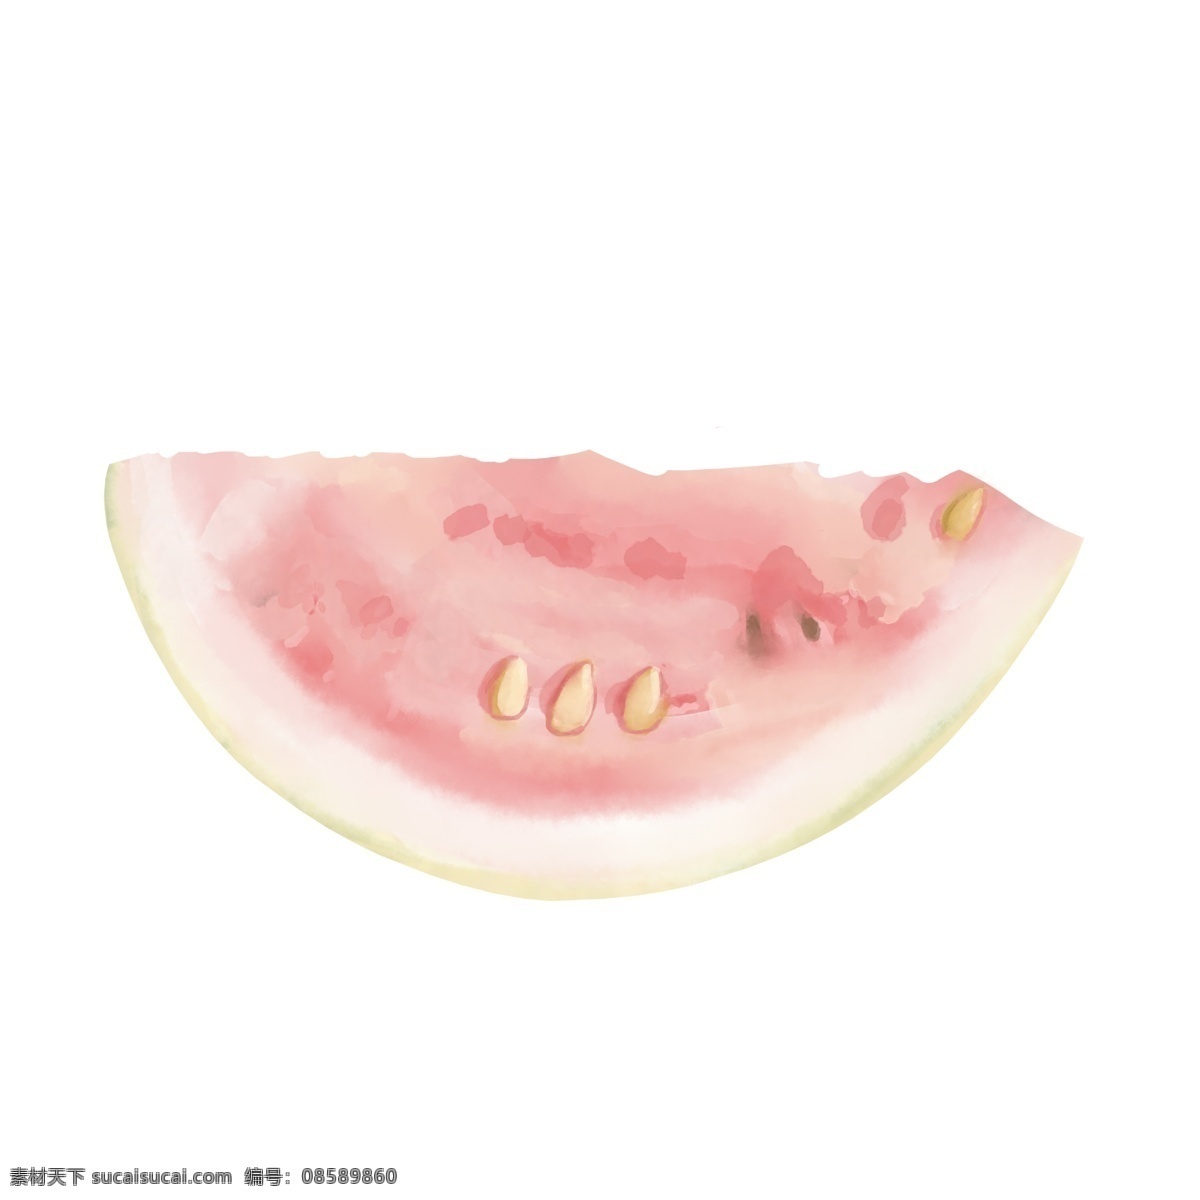 白色 果仁 西瓜 手绘 粉白色 未成熟的 生的 插画 写实 仿真 免抠 水果 夏天 夏季 食物 可口的